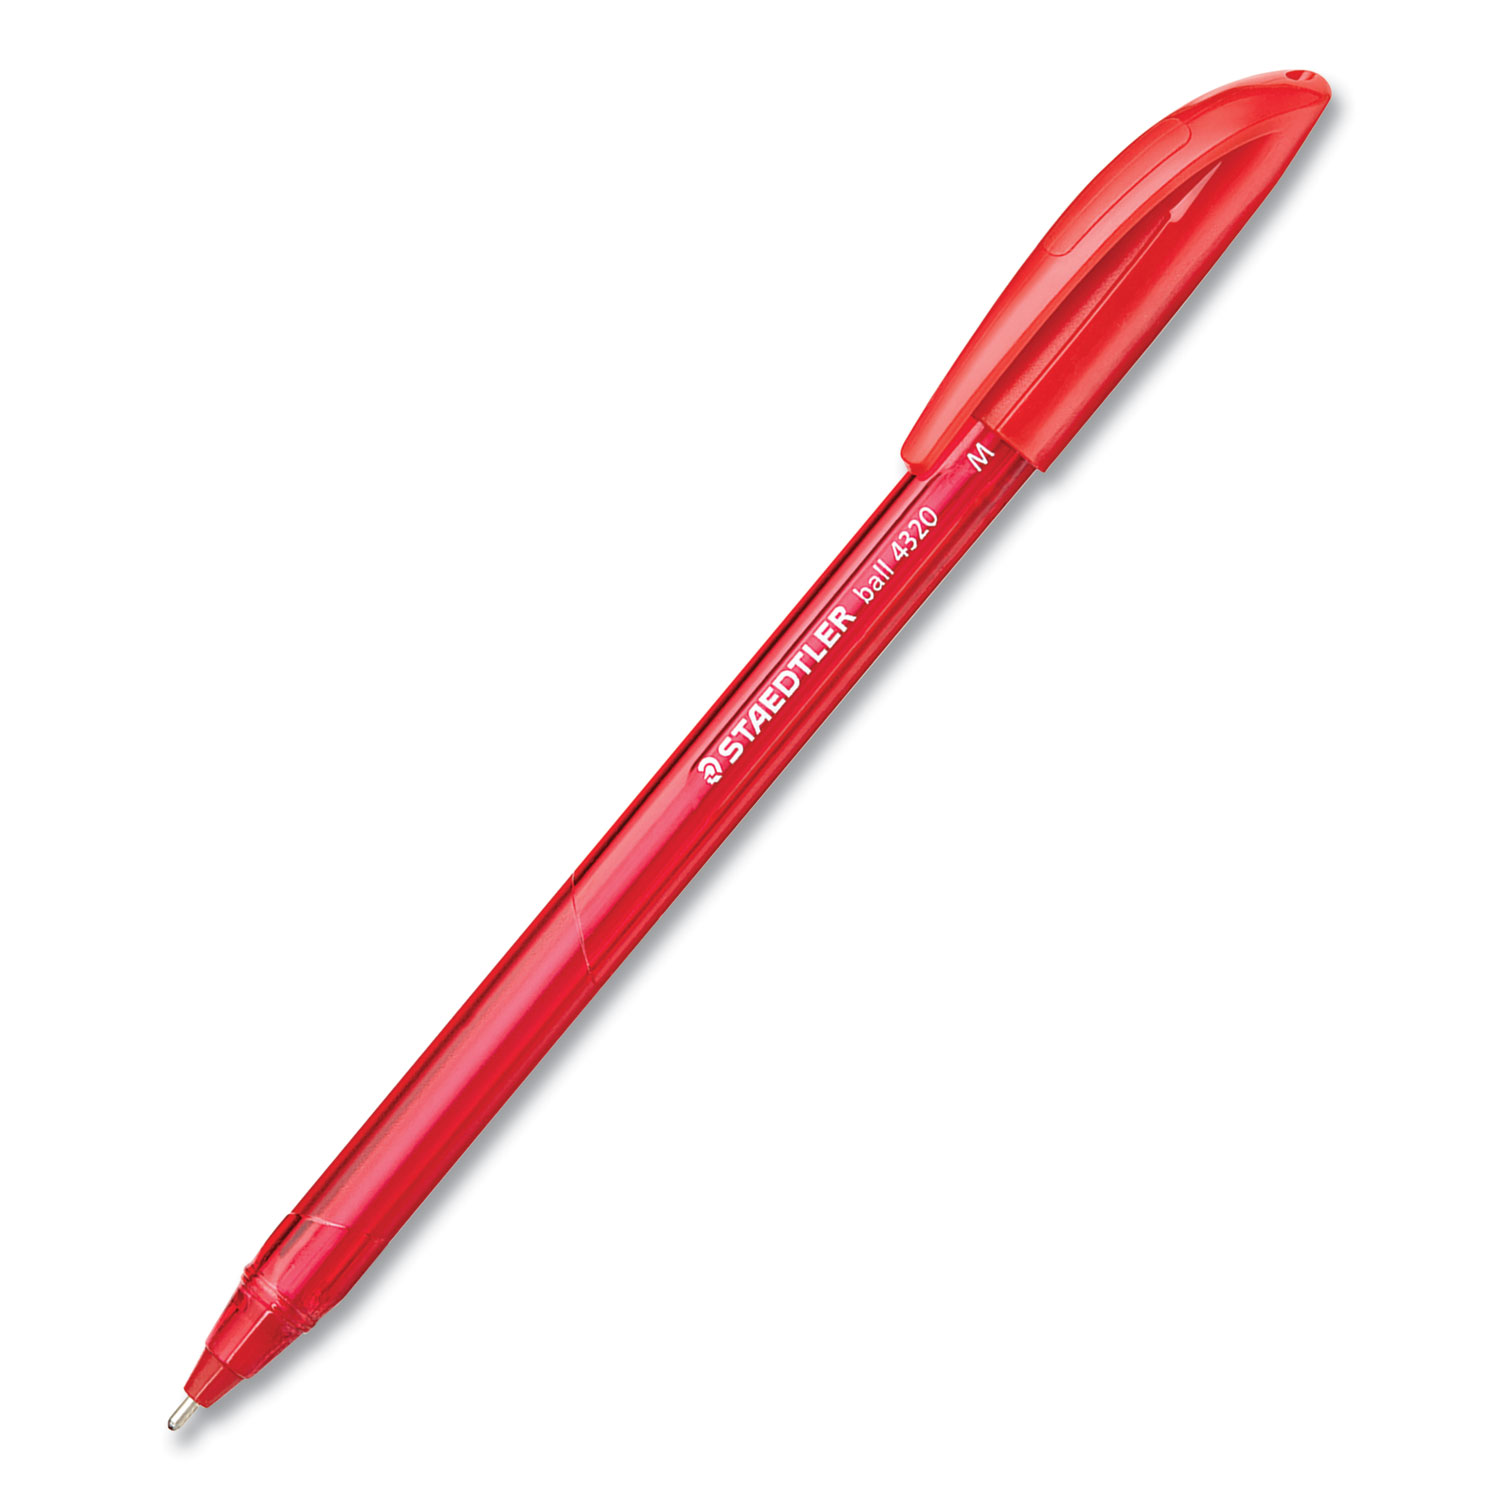 Staedtler TriPlus Fineliner Stick Porous Point Pen, 0.3mm, Assorted Ink, Silver Barrel, 6/Set